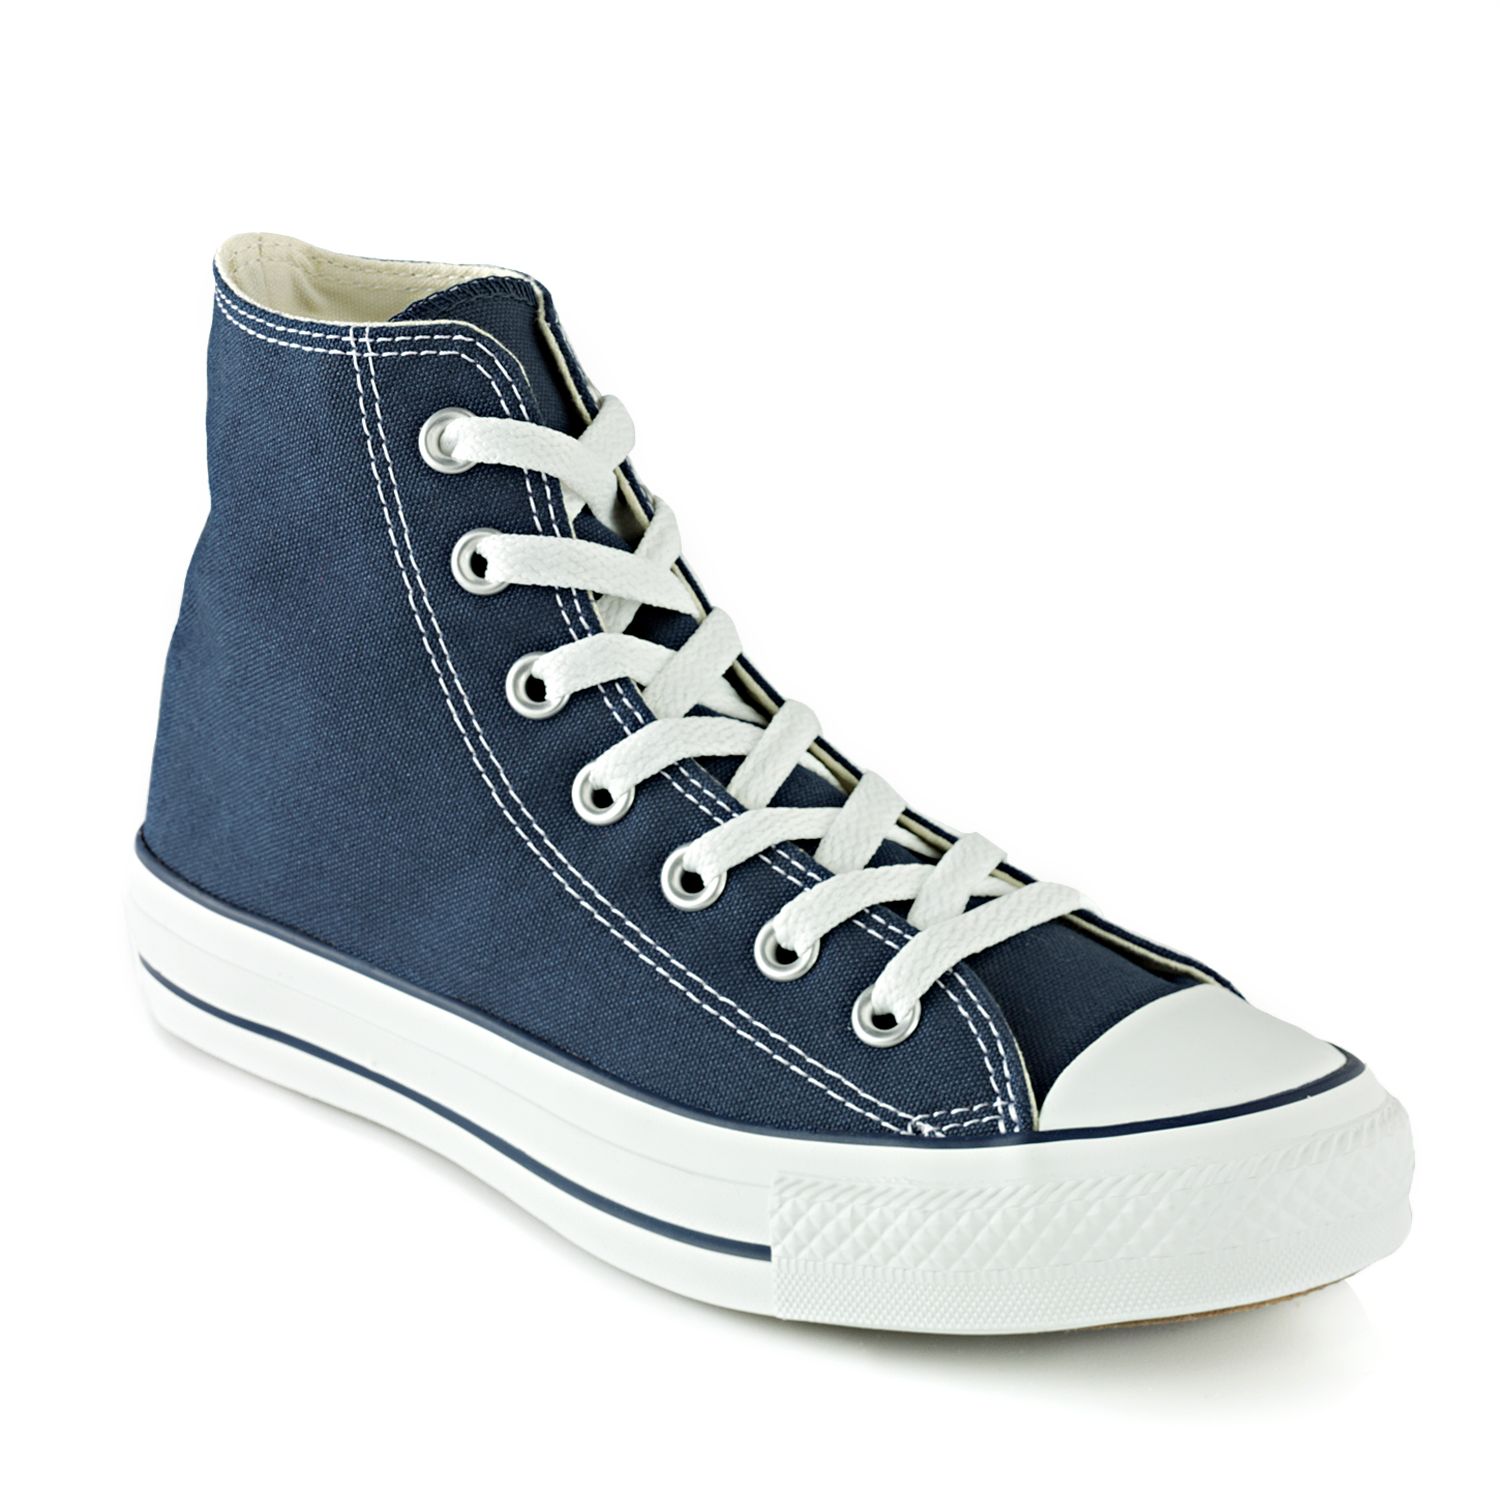 Blue Converse Shoes | Kohl's